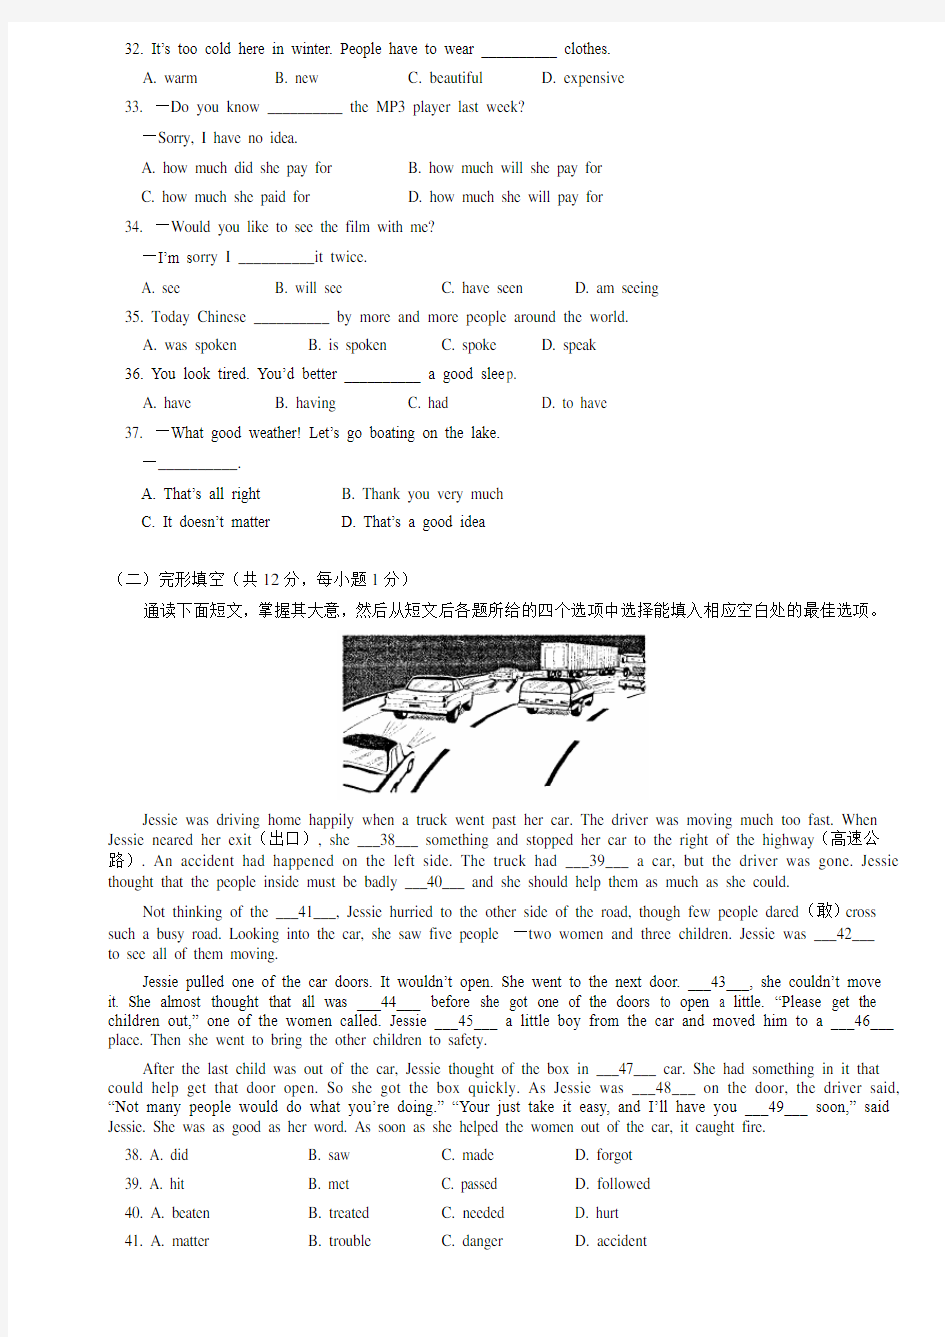 2006年北京中考英语试题及答案